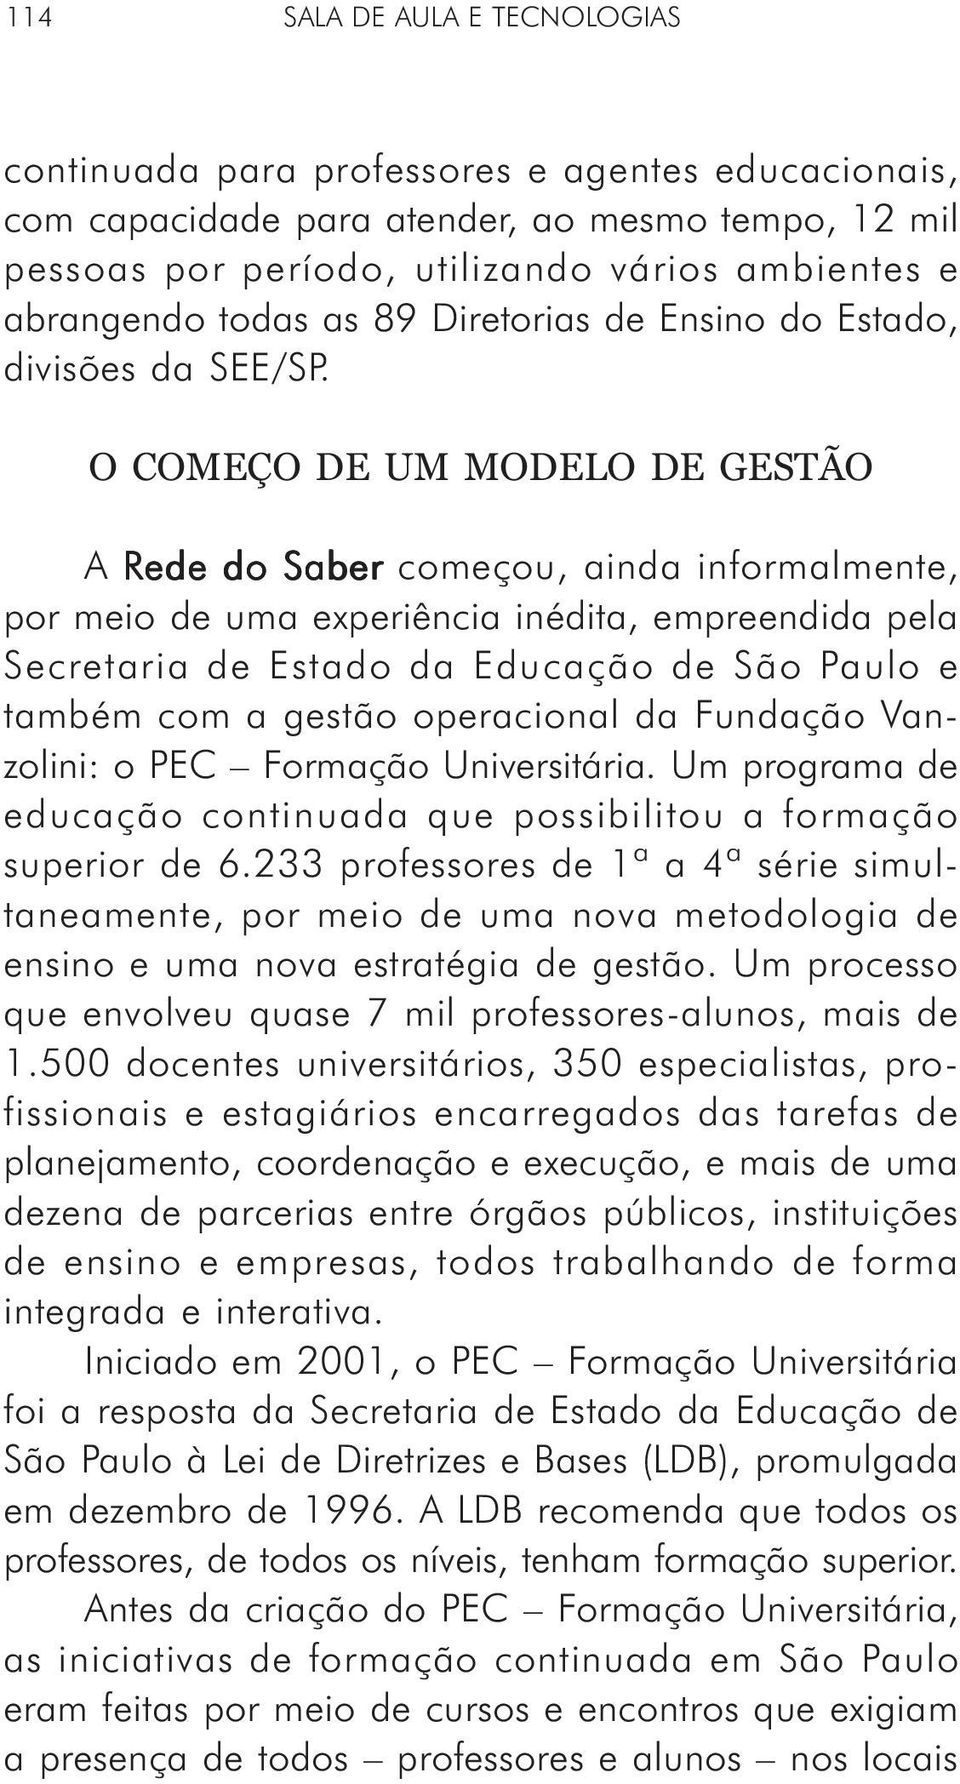 O COMEÇO DE UM MODELO DE GESTÃO A Rede do Saber começou, ainda informalmente, por meio de uma experiência inédita, empreendida pela Secretaria de Estado da Educação de São Paulo e também com a gestão